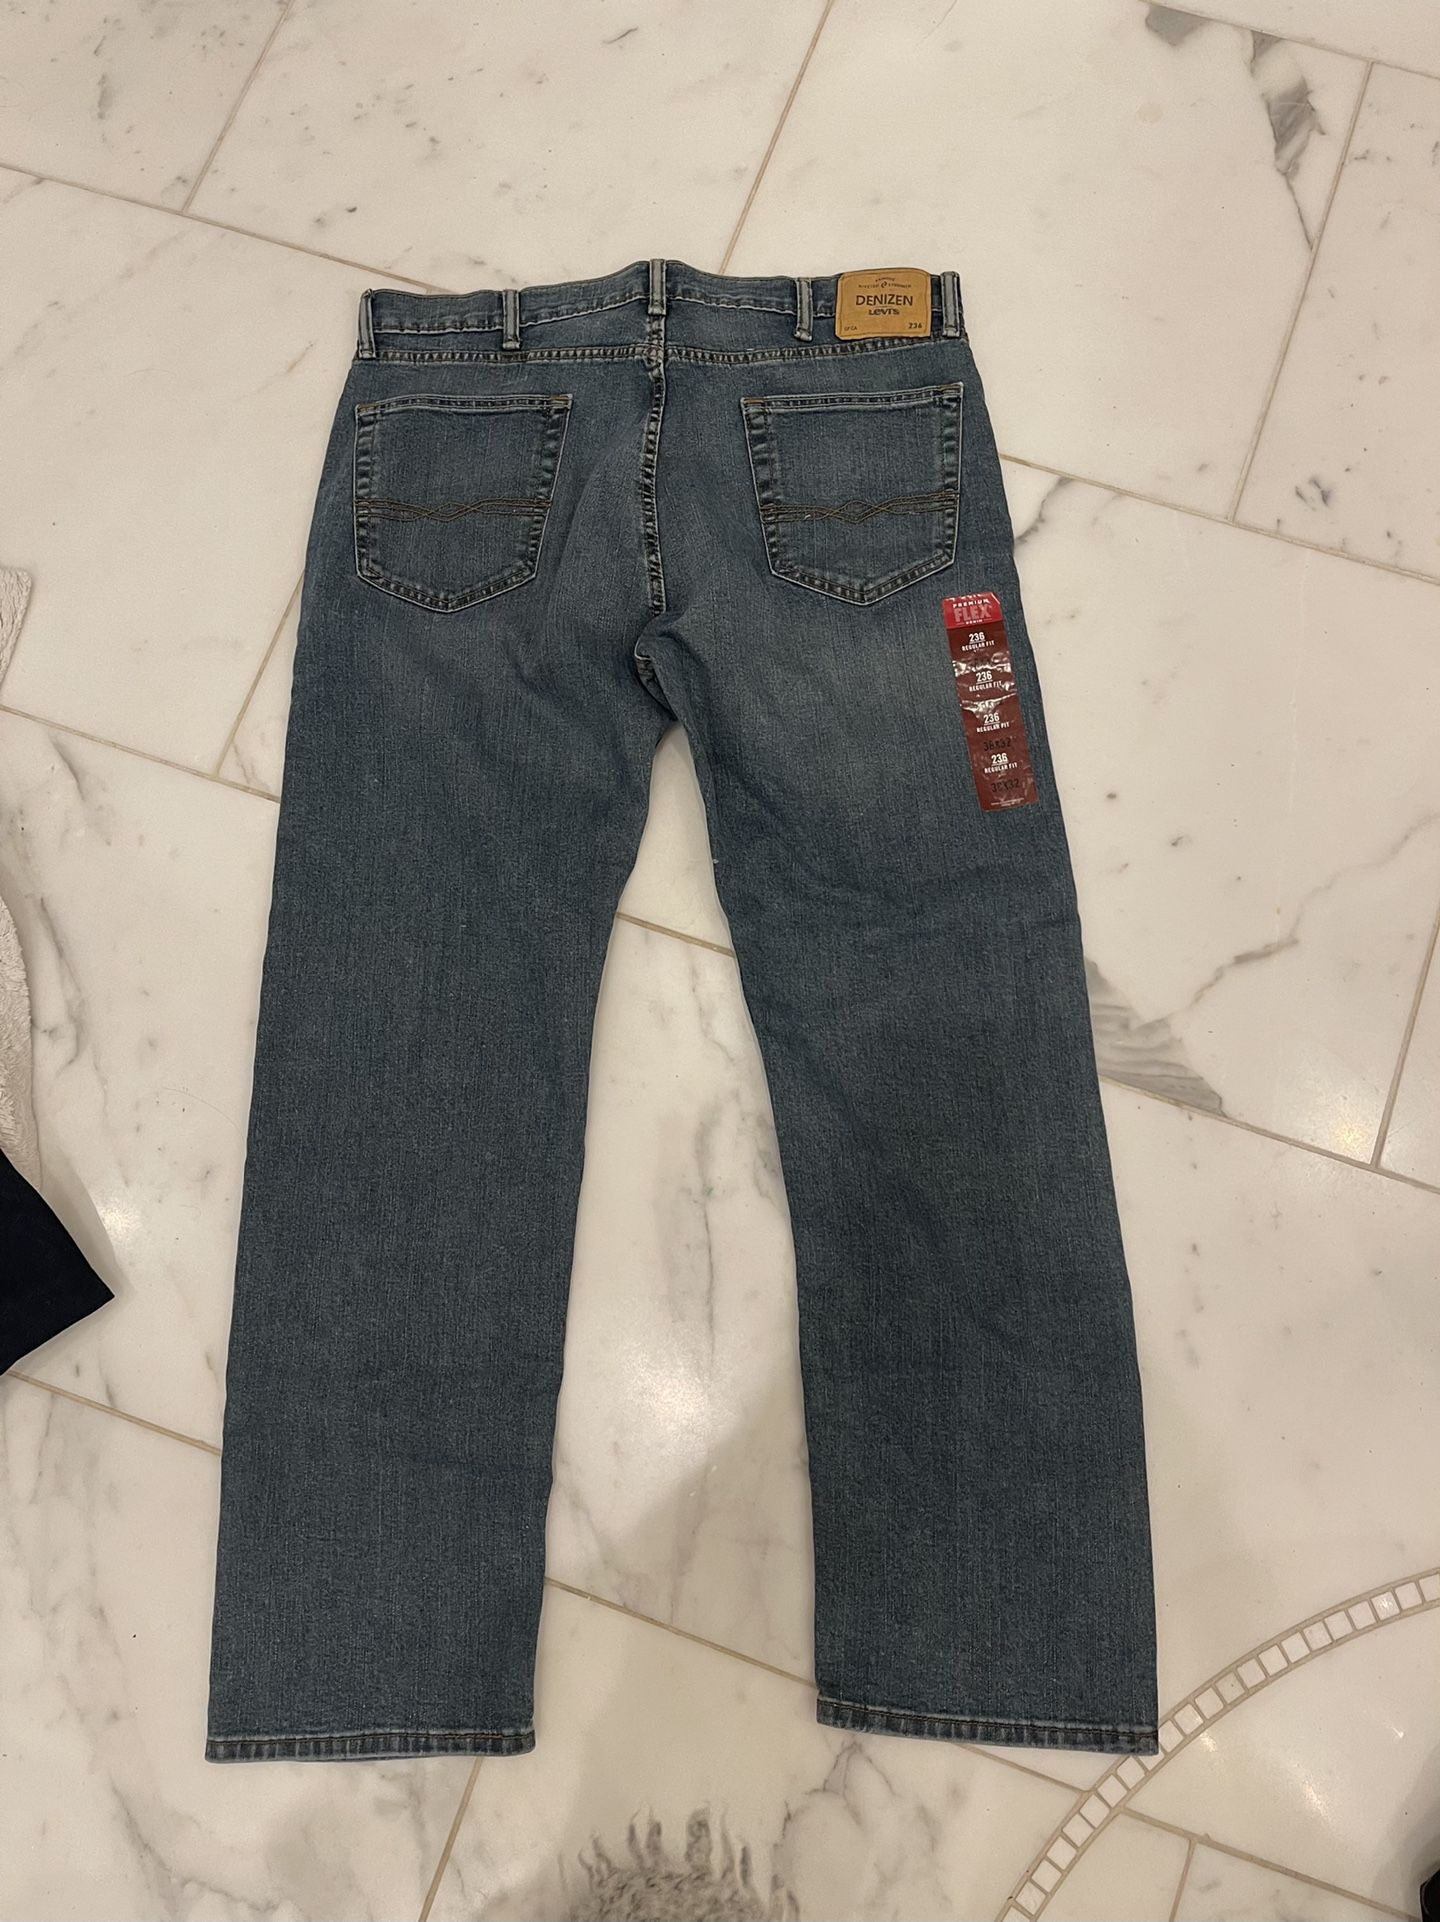 Levis Men’s Jeans